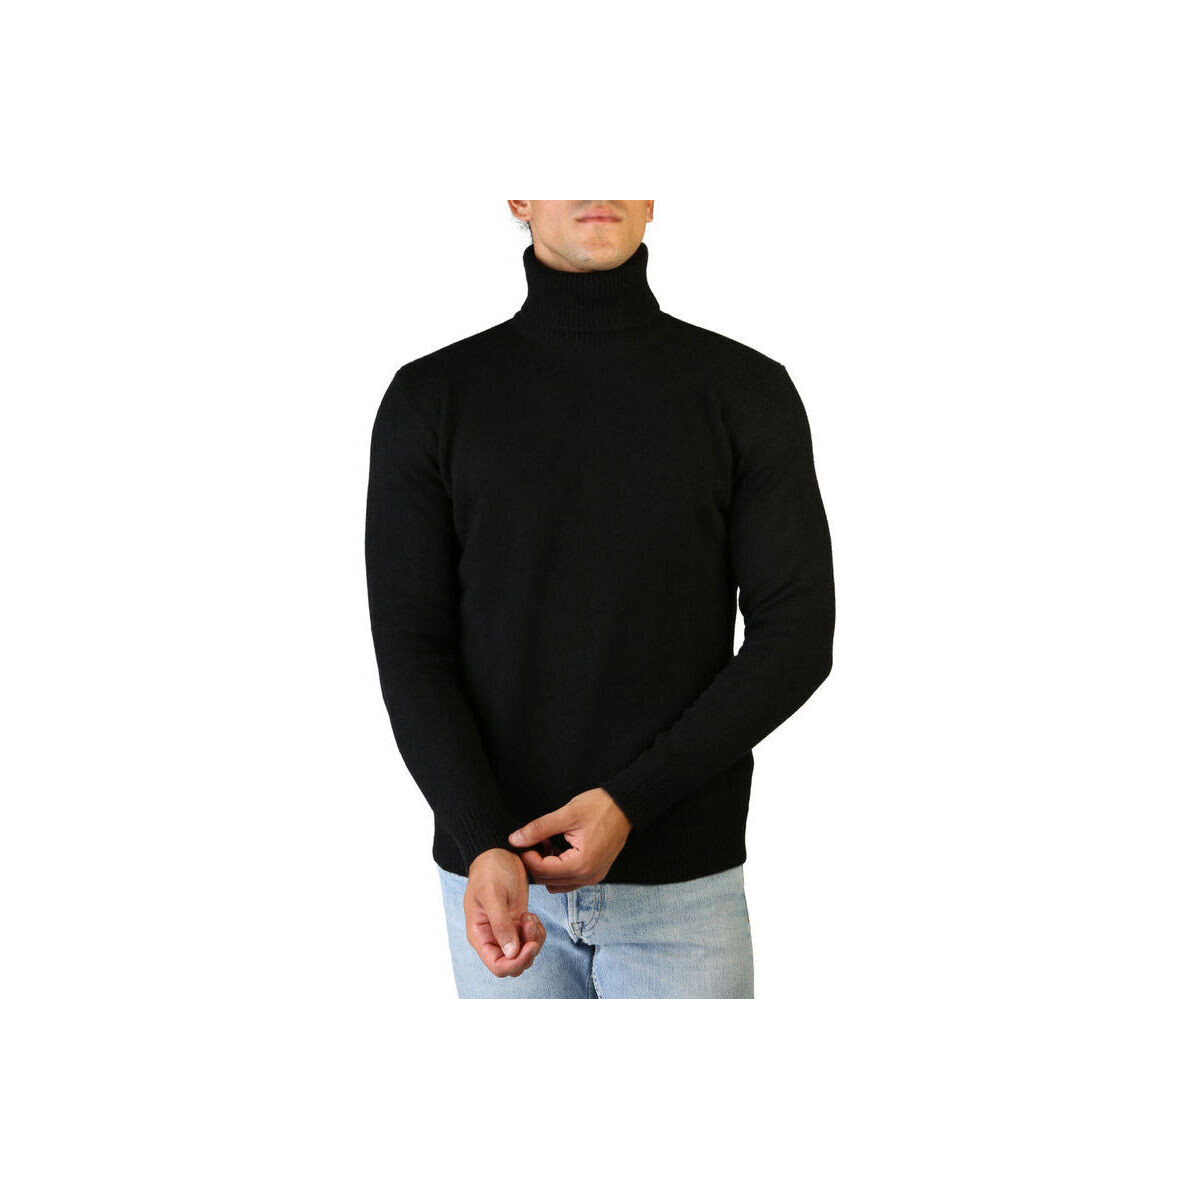 Υφασμάτινα Άνδρας Πουλόβερ 100% Cashmere Jersey roll neck Black